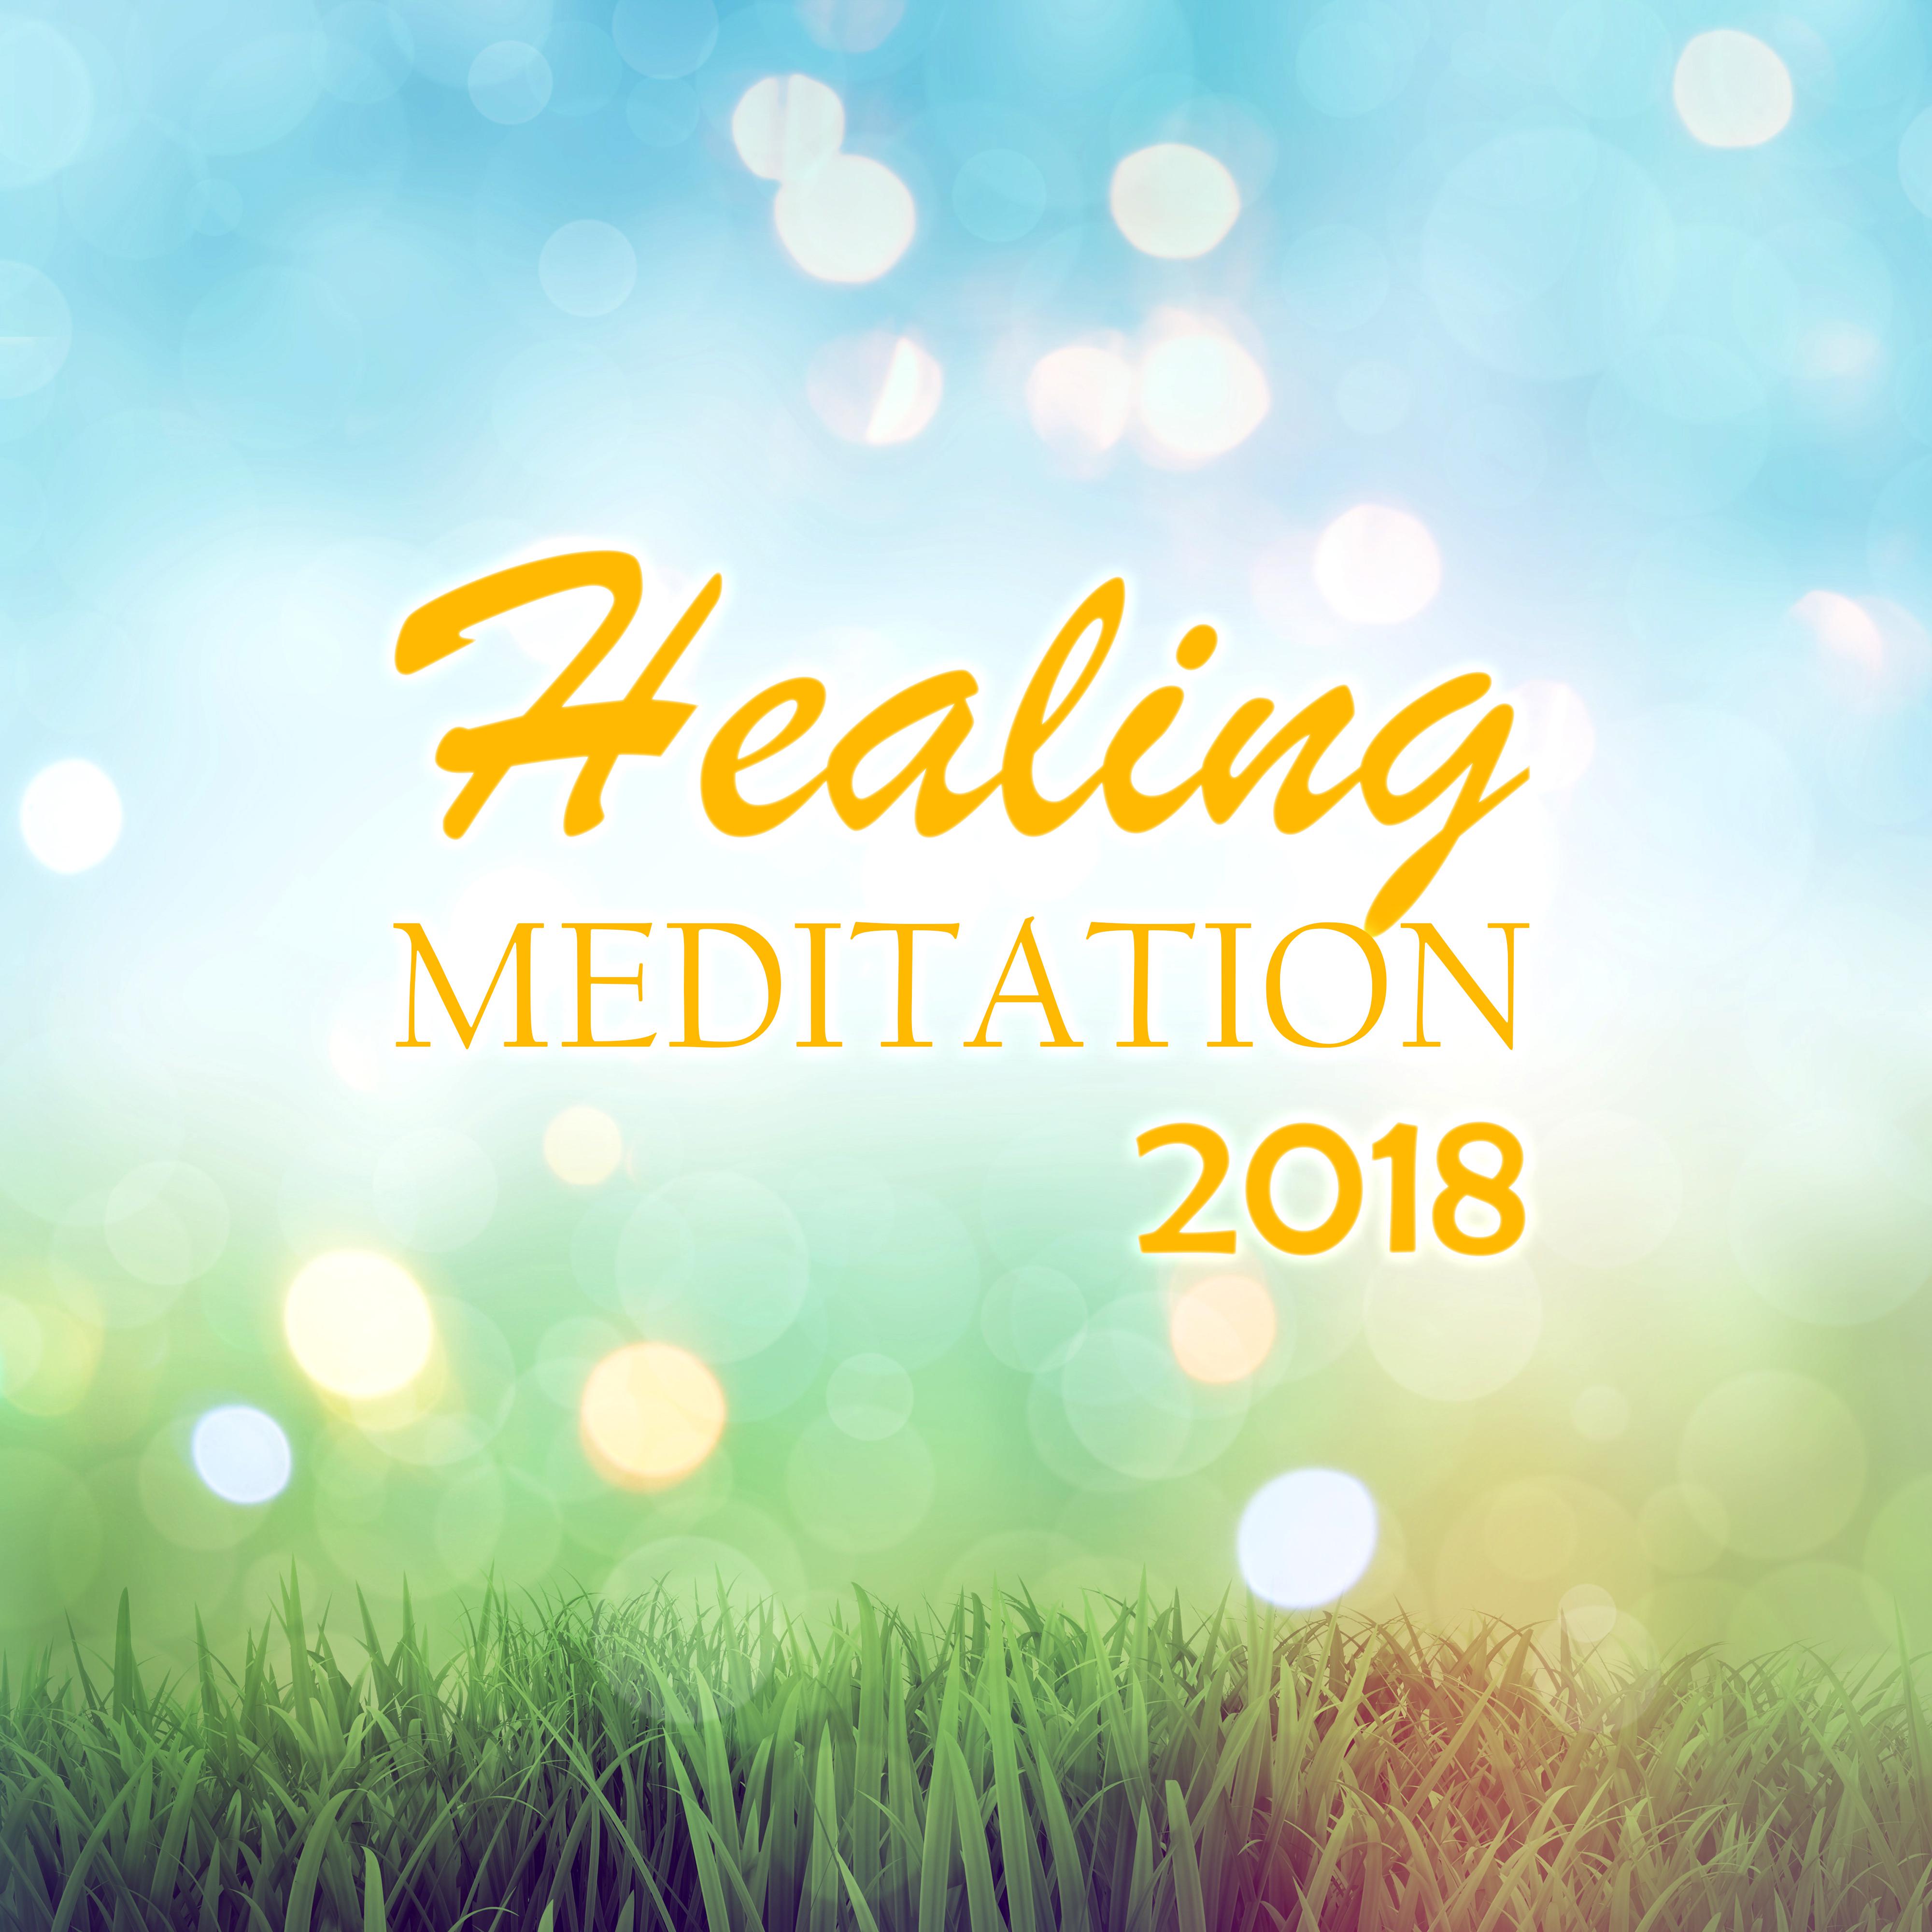 Healing Meditation 2018